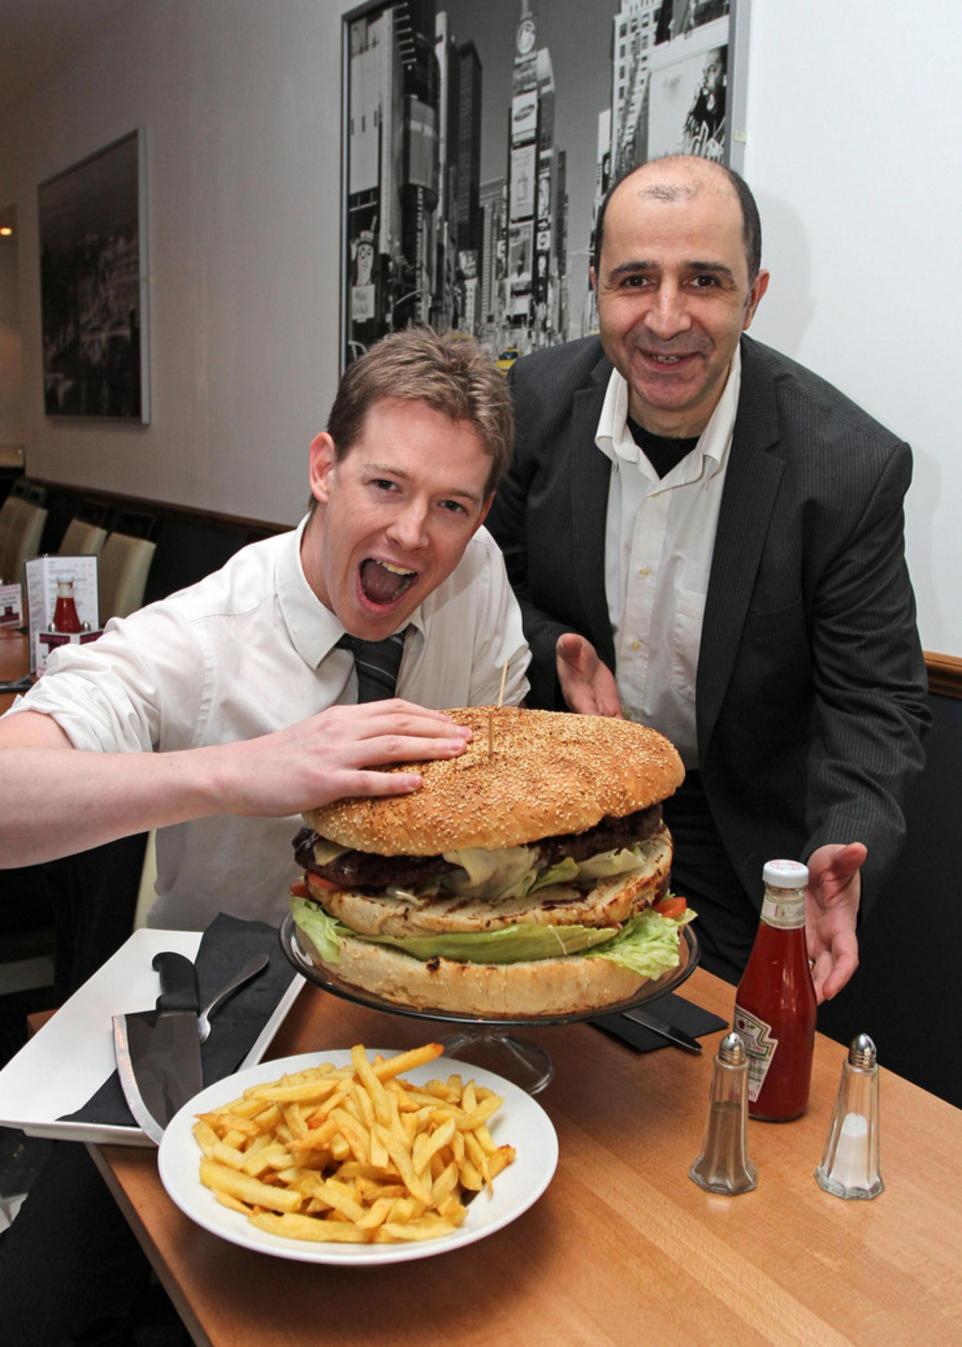 Britain's biggest burger